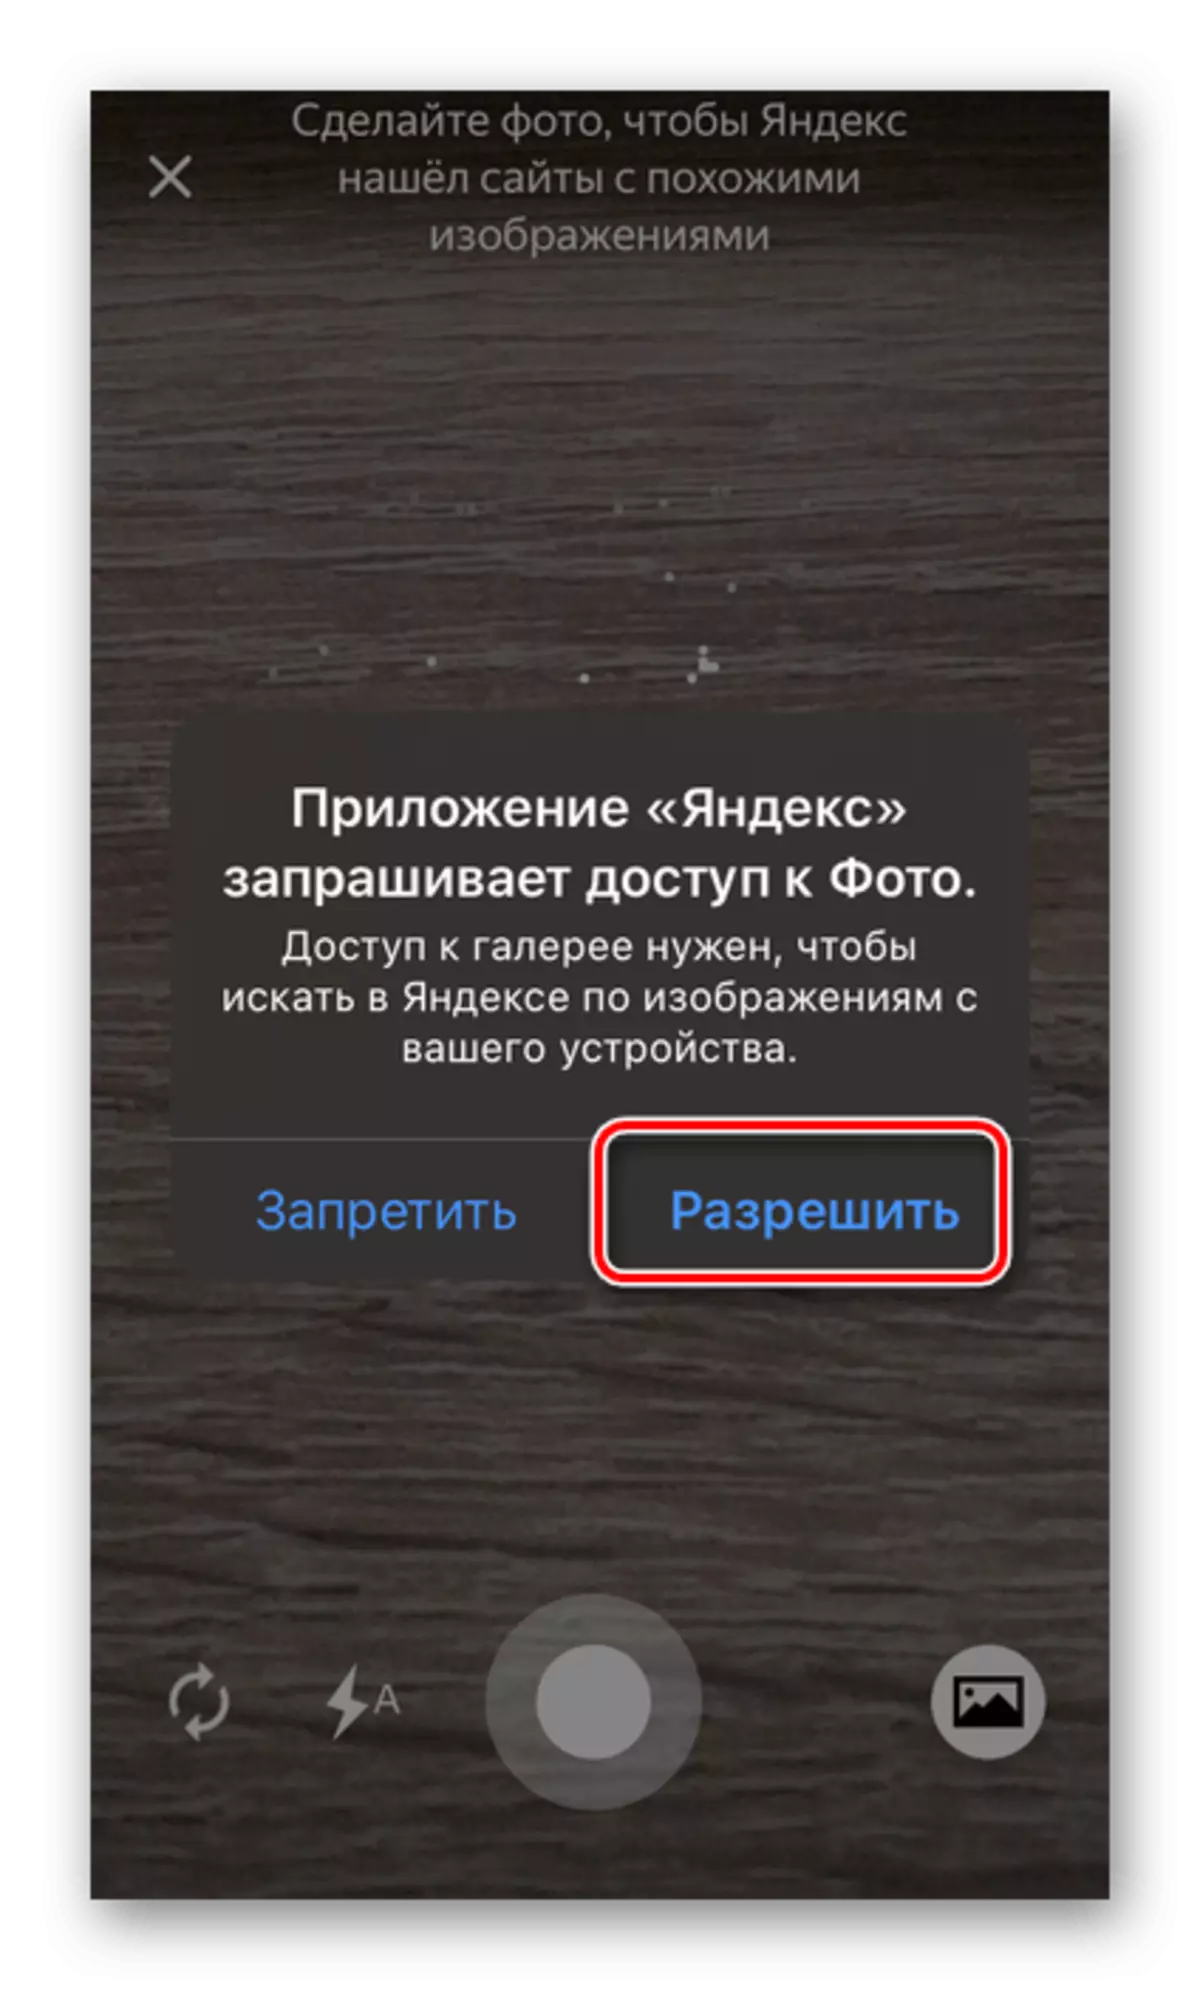 දුරකථනයේ Yandex යෙදුම තුළ ඡායාරූපයට ප්රවේශ වීමට ඉඩ දෙන්න